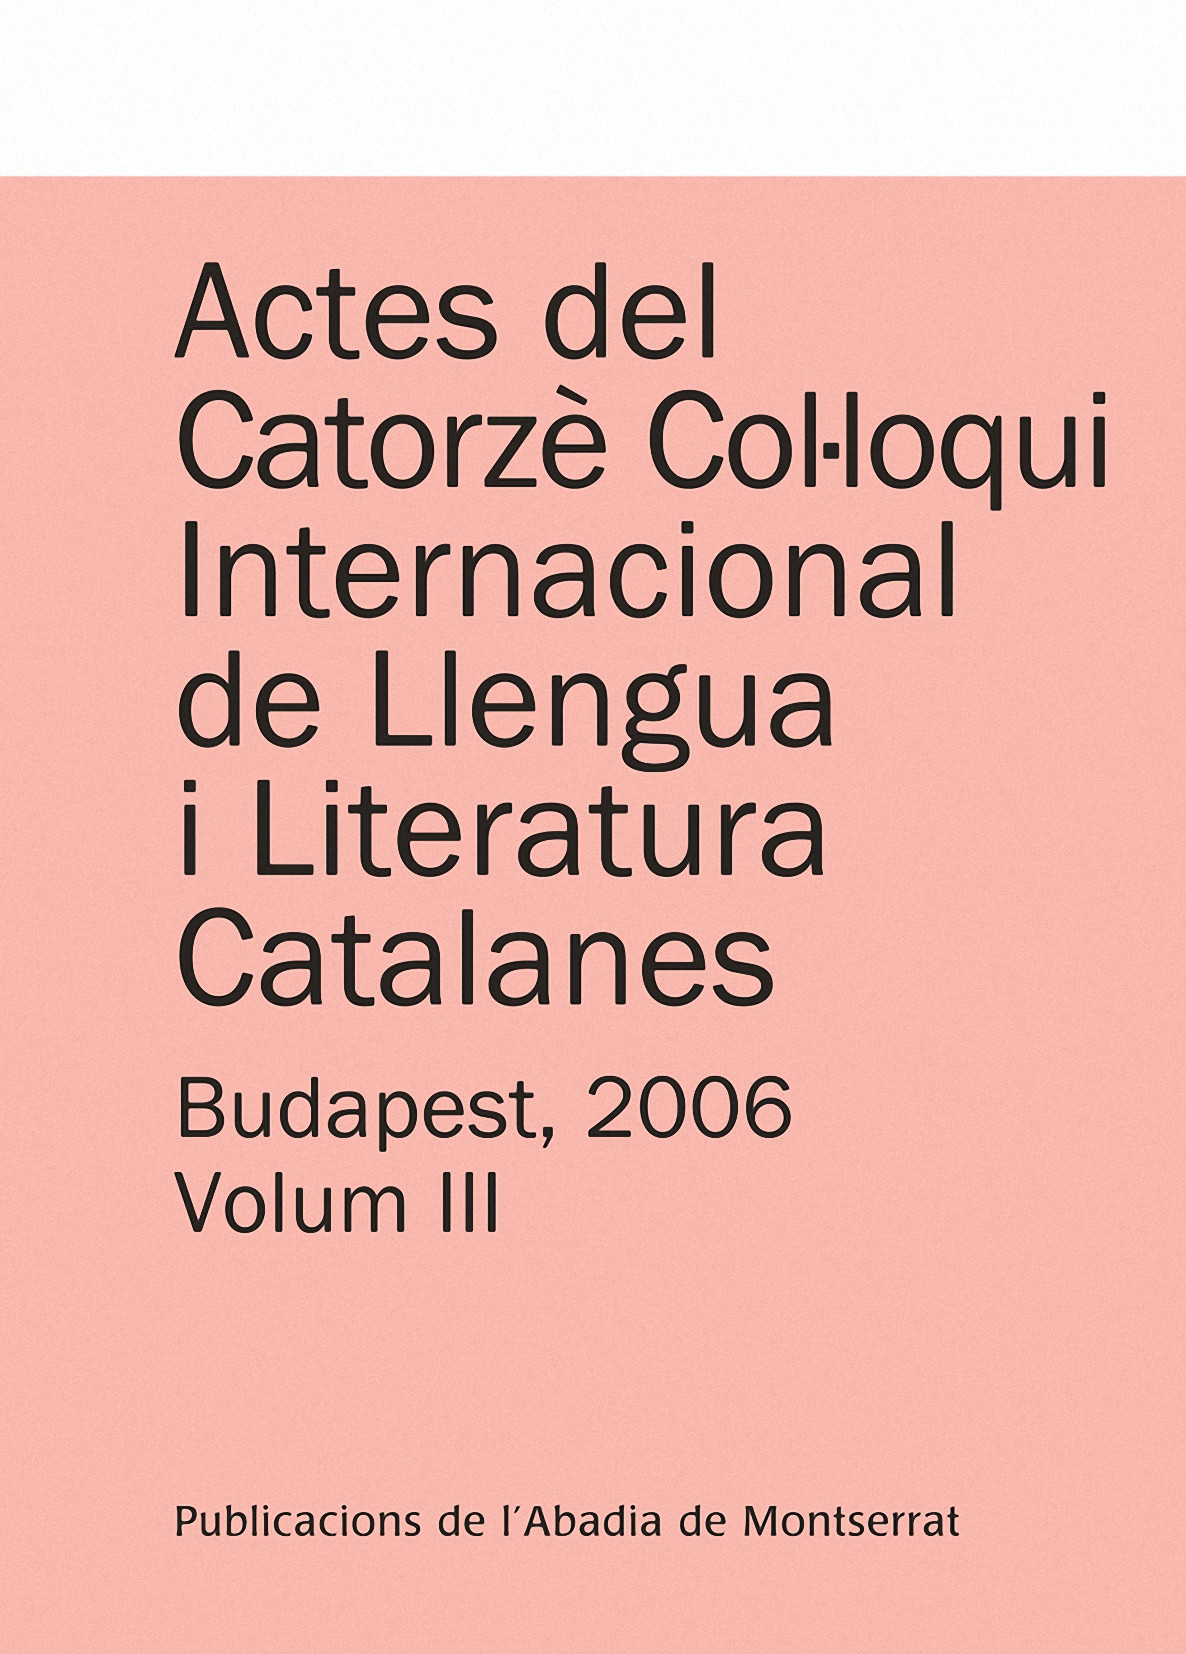 ACTES DEL CATORZÈ COL·LOQUI INTERNACIONAL DE LLENGUA I LITERATURA CATALANES. BUDUNIVERSITAT EÖT